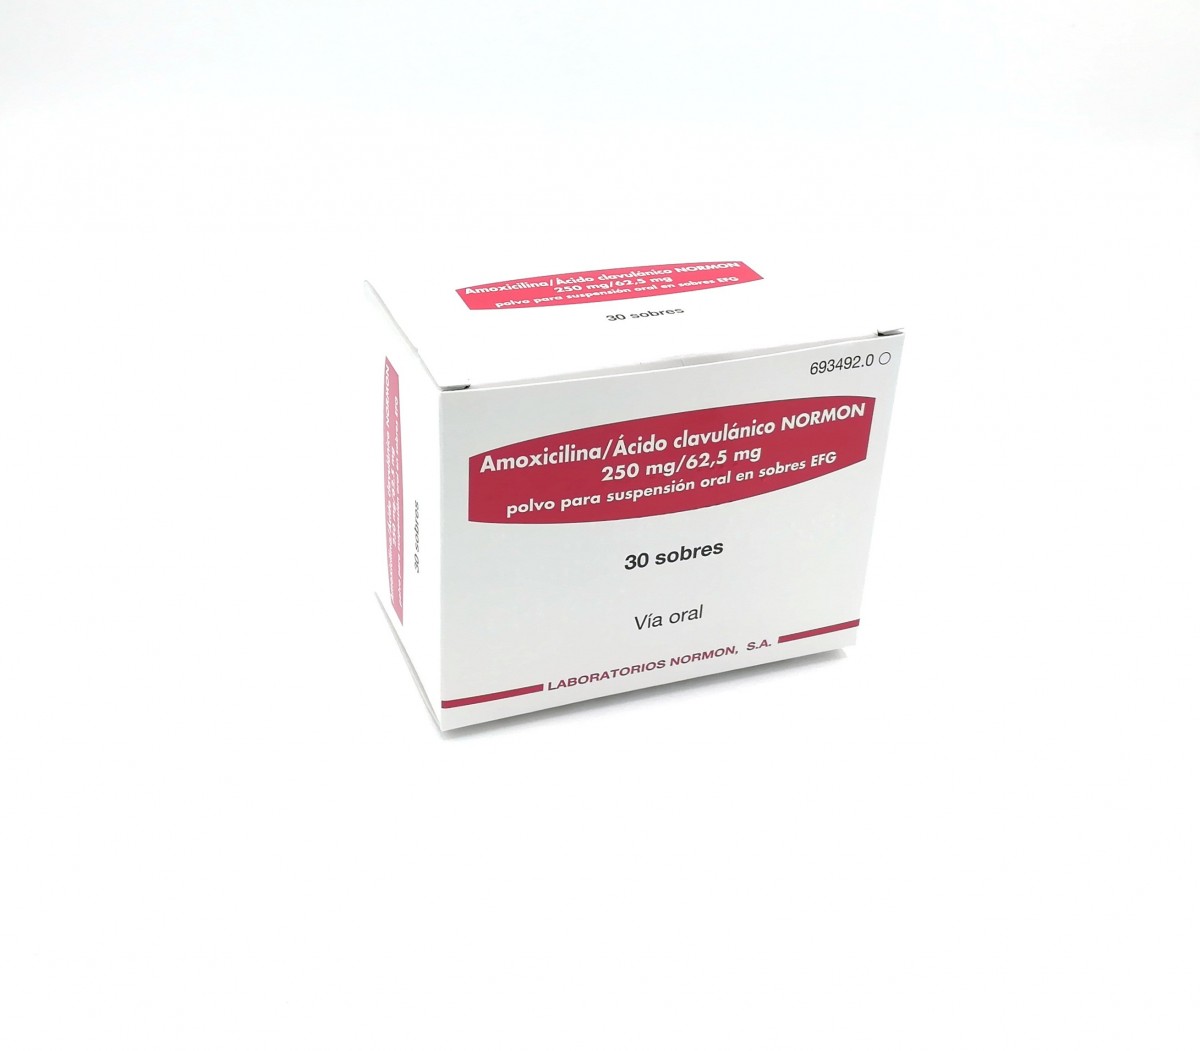 AMOXICILINA/ACIDO CLAVULANICO NORMON 250 mg/62,5 mg  POLVO PARA SUSPENSION ORAL EN SOBRES EFG, 30 sobres fotografía del envase.